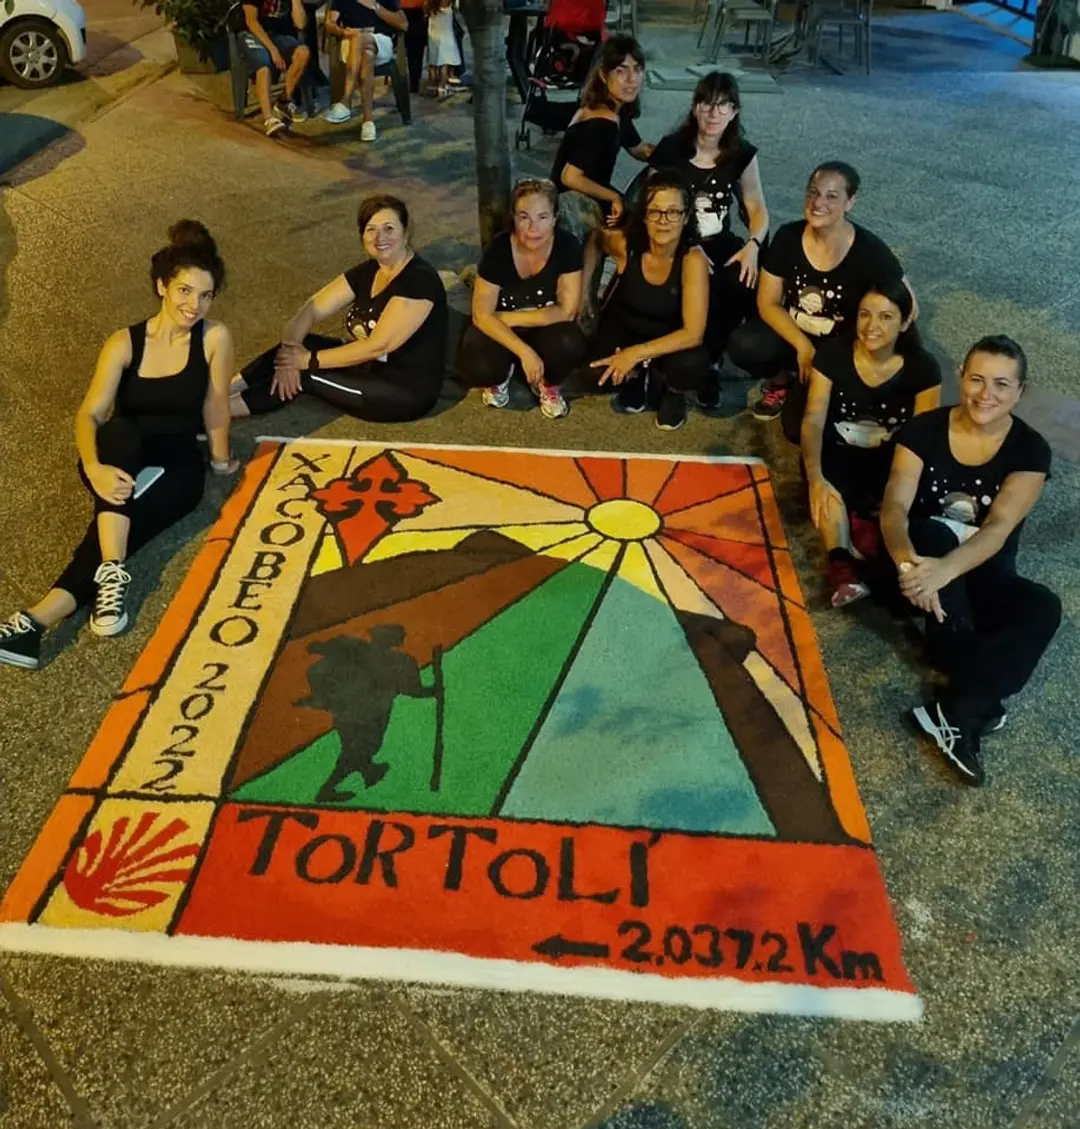 Tortolì (NU) | Road to Santiago 2037,2 km